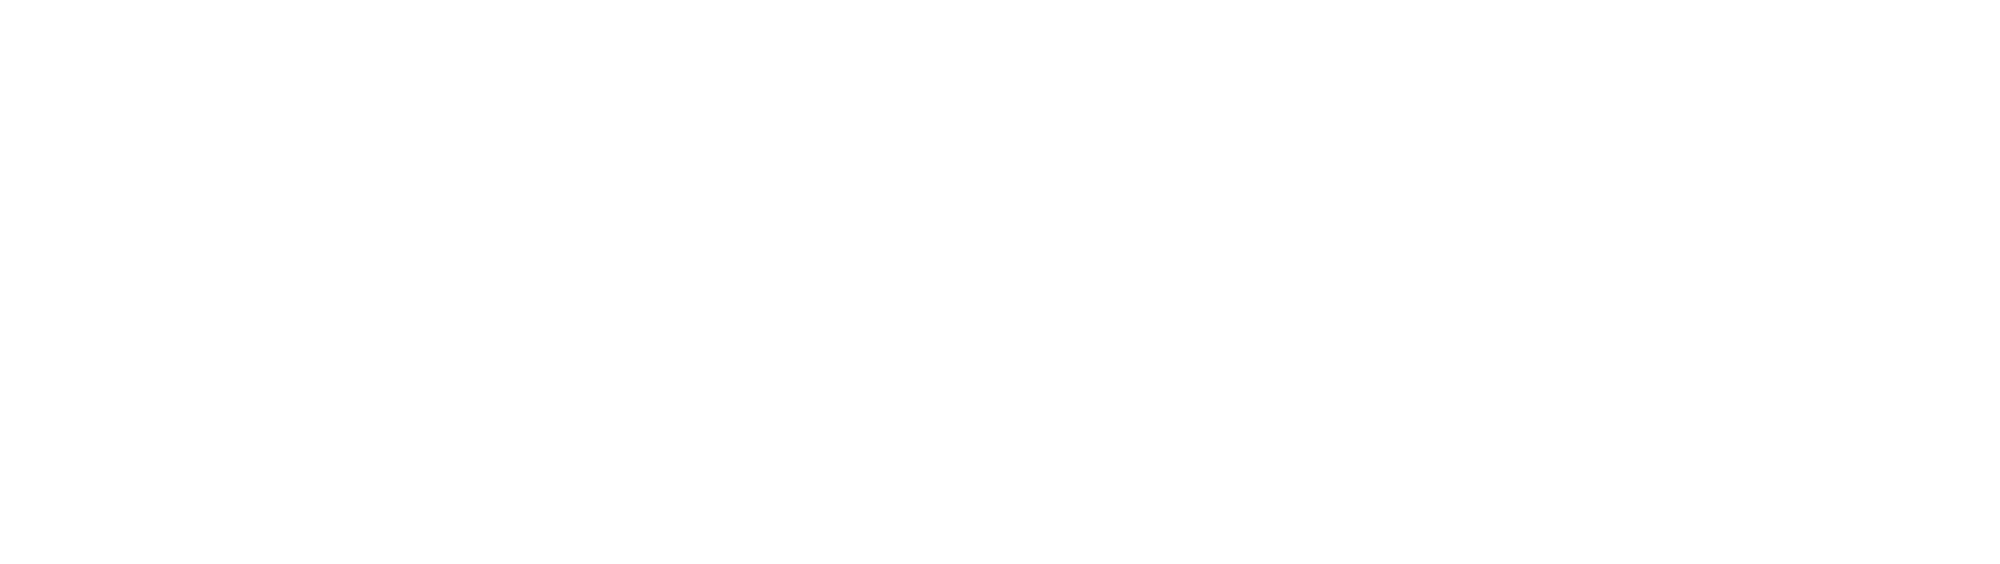 Electrobuzz